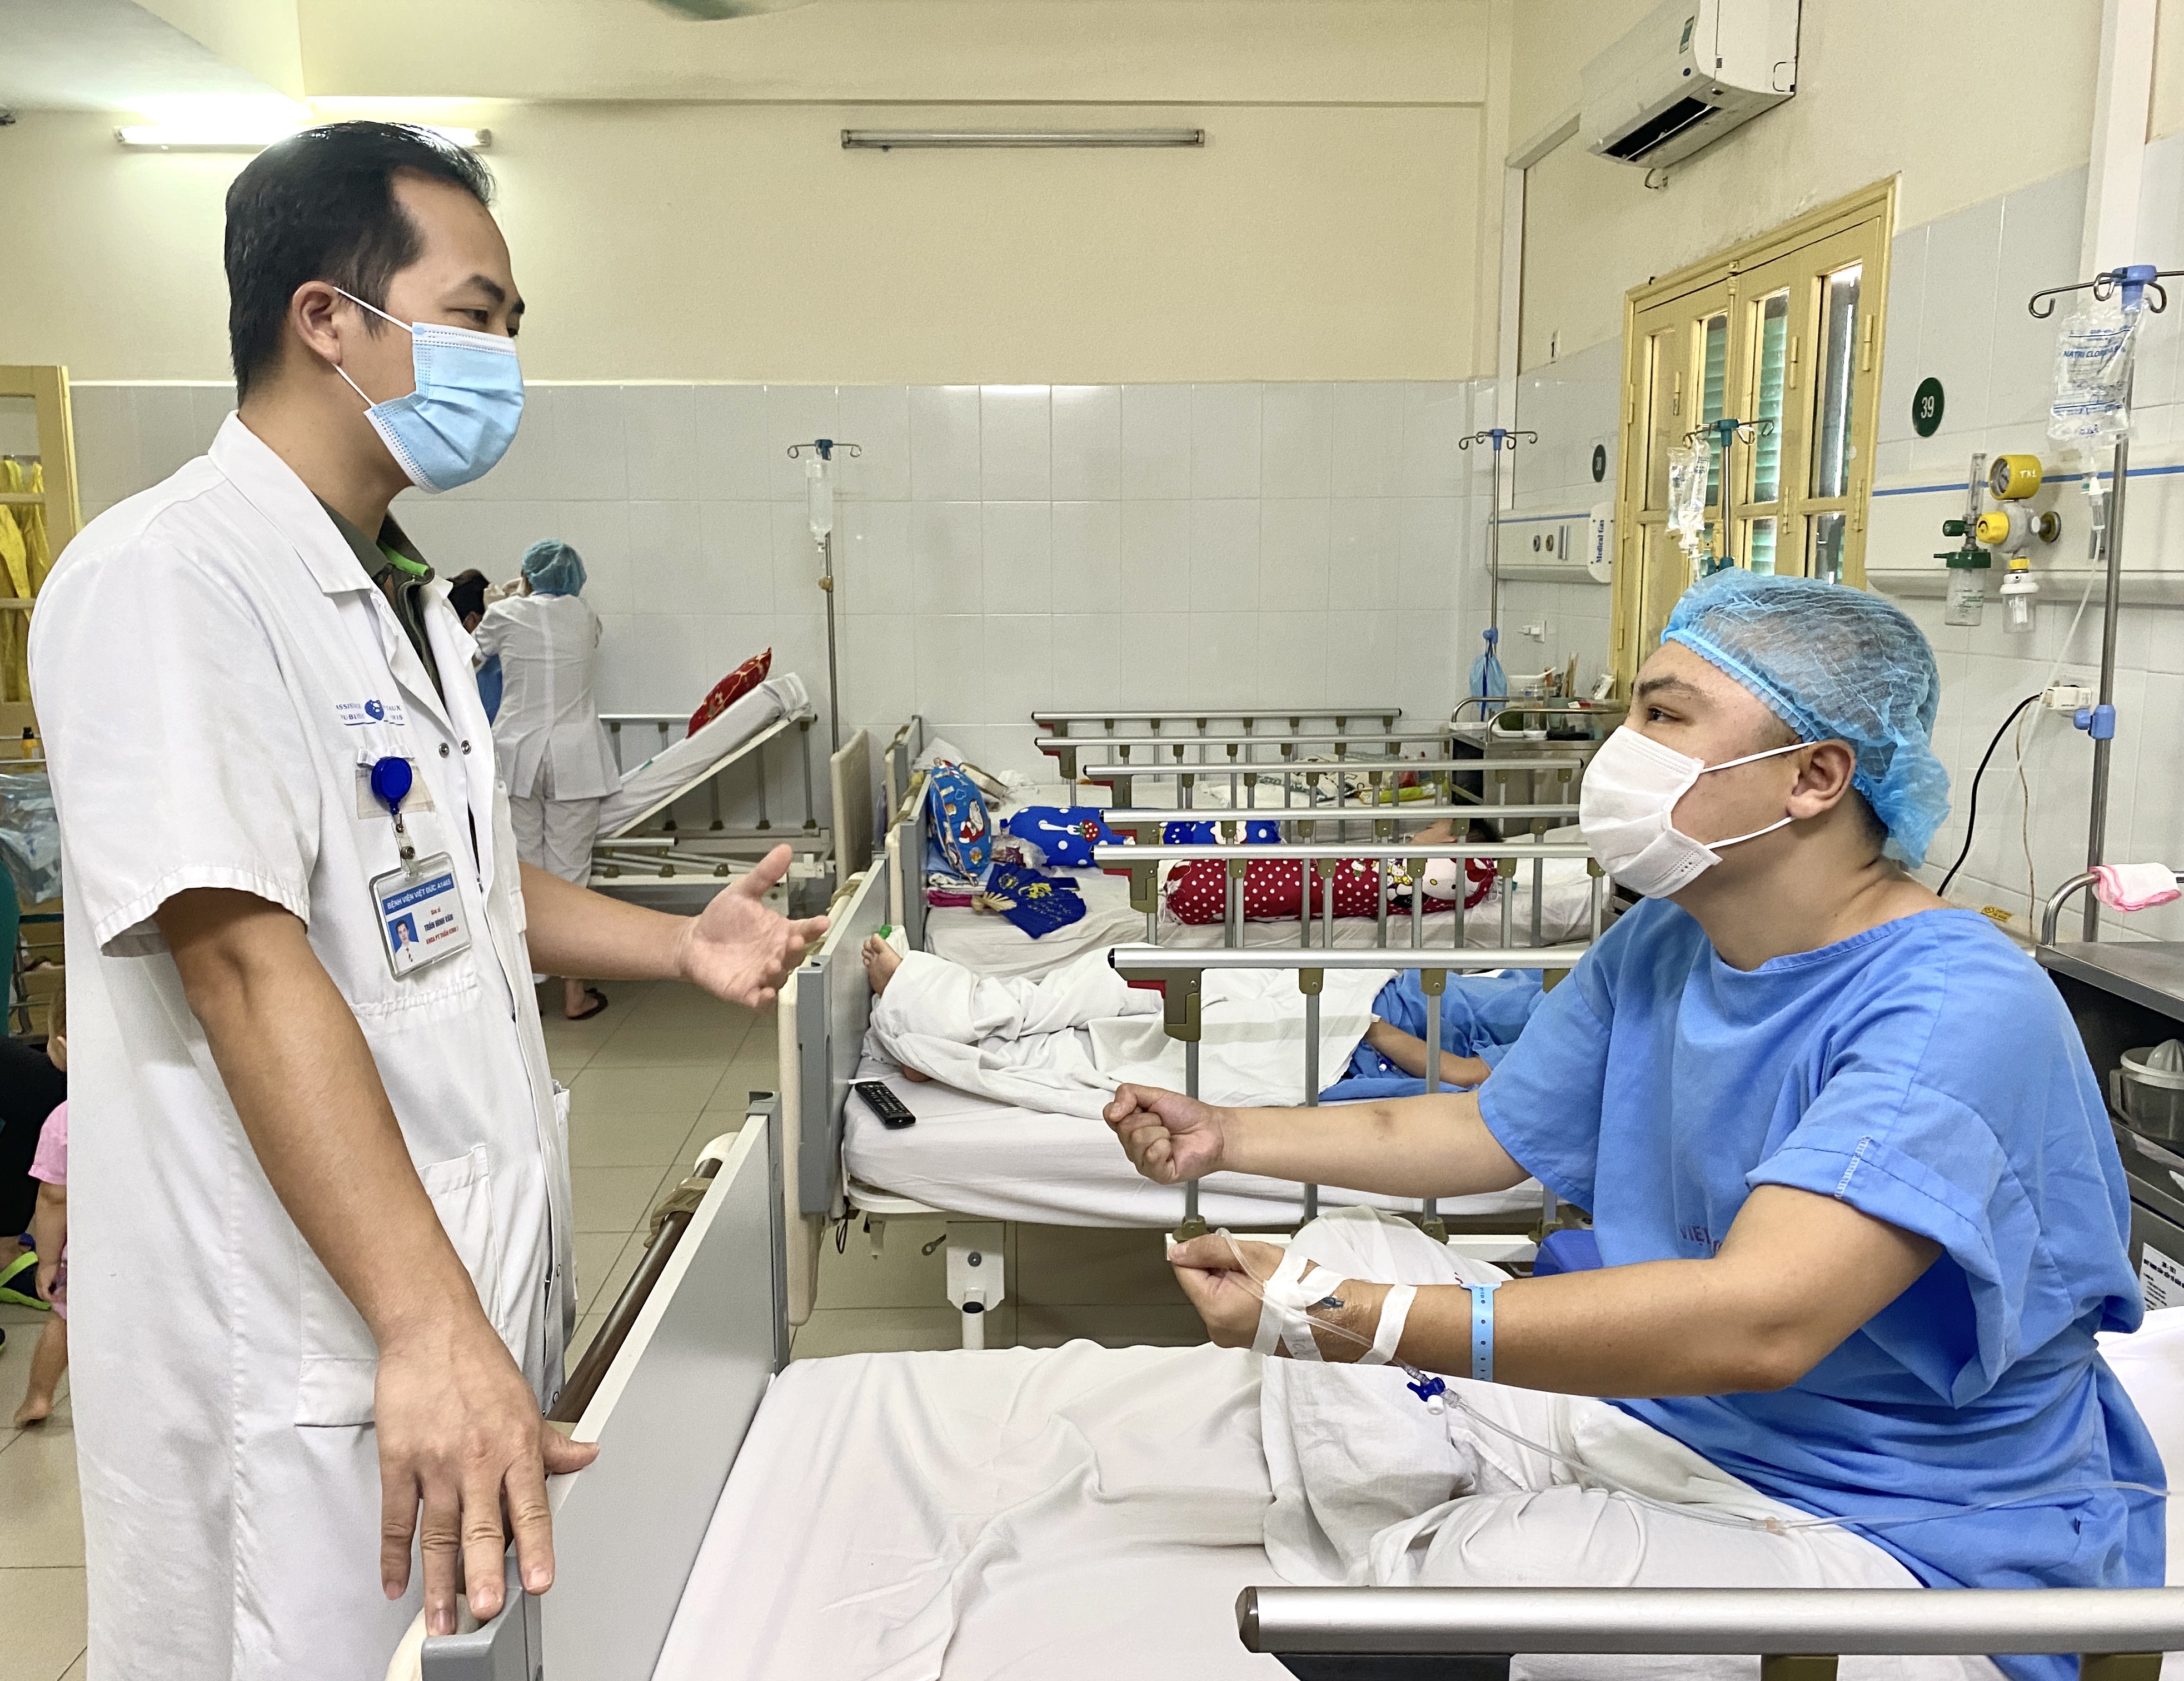 Phẫu Thuật Điều Trị Động Kinh Thành Công Cho Bệnh Nhân Sống Chung Với Những  Cơn Động Kinh 21 Năm - Bệnh Viện Việt Đứcbệnh Viện Việt Đức